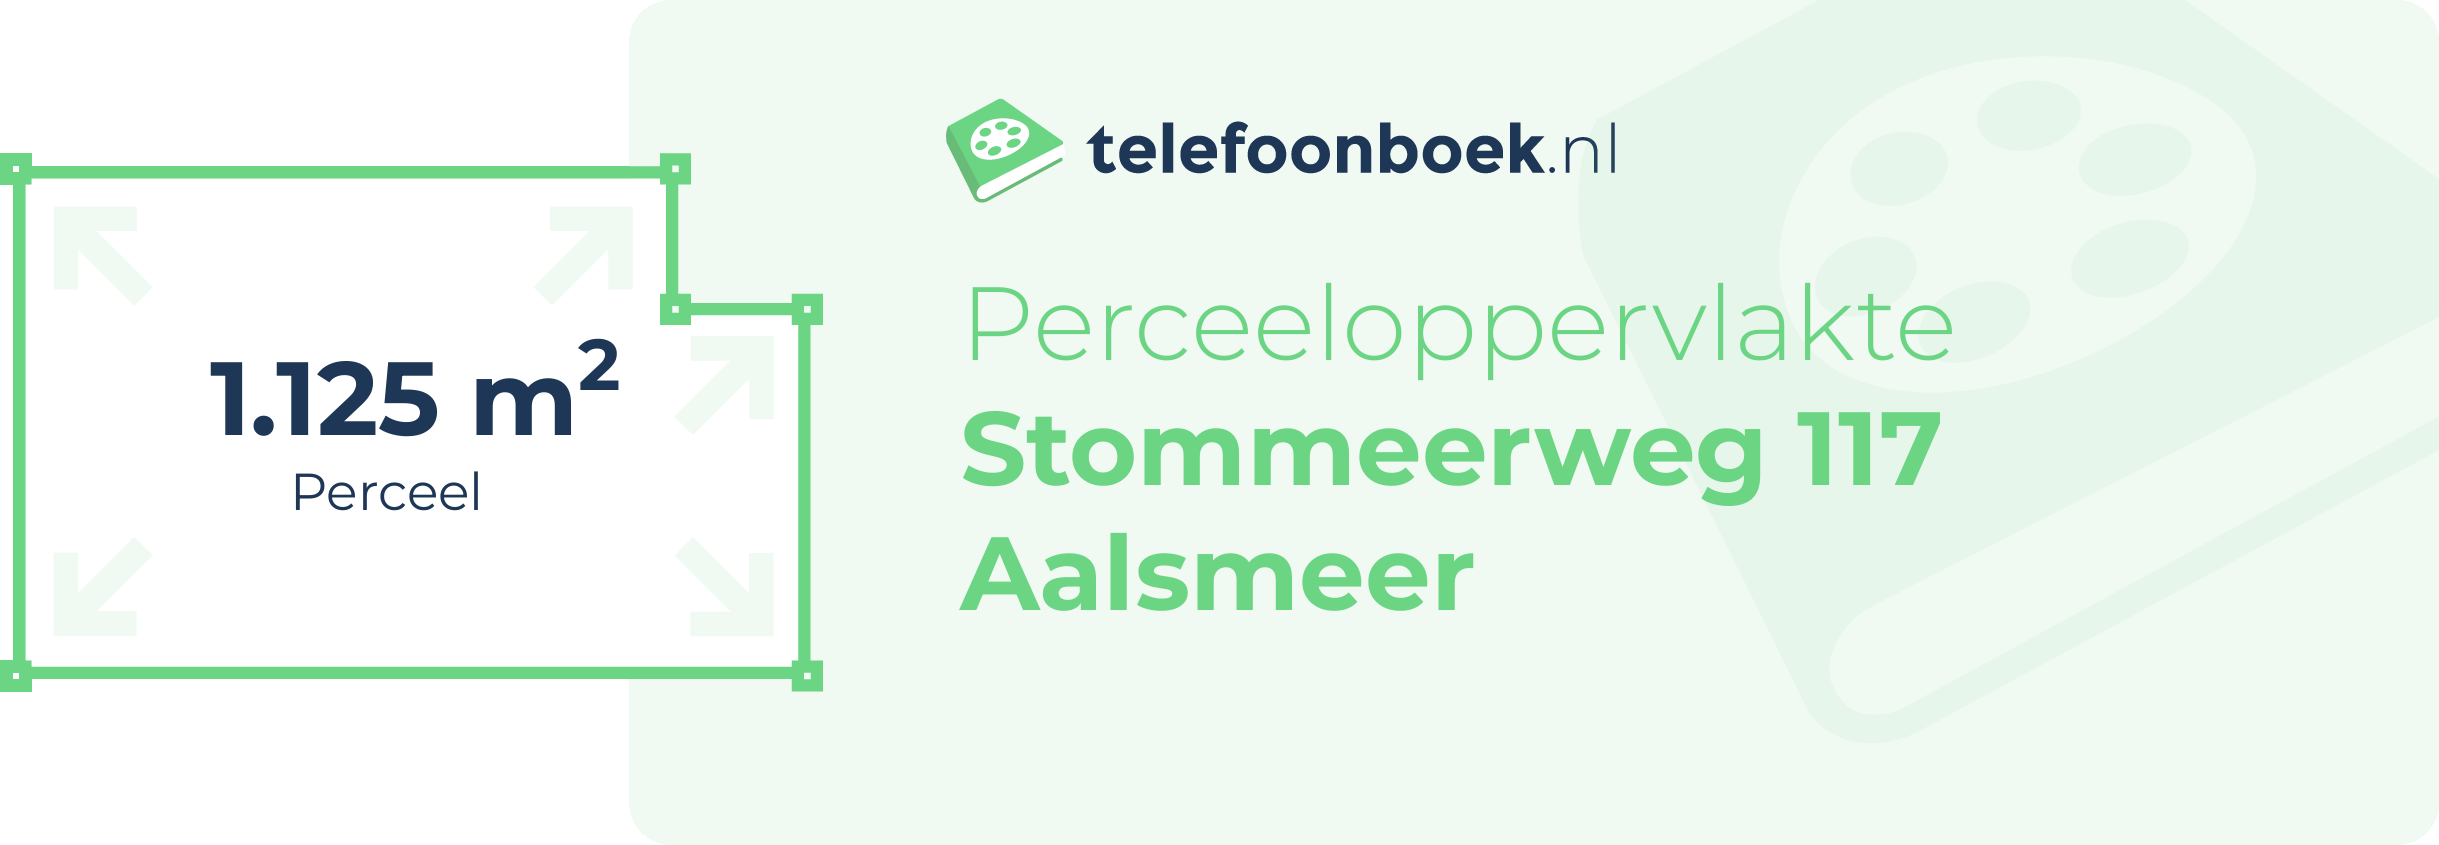 Perceeloppervlakte Stommeerweg 117 Aalsmeer